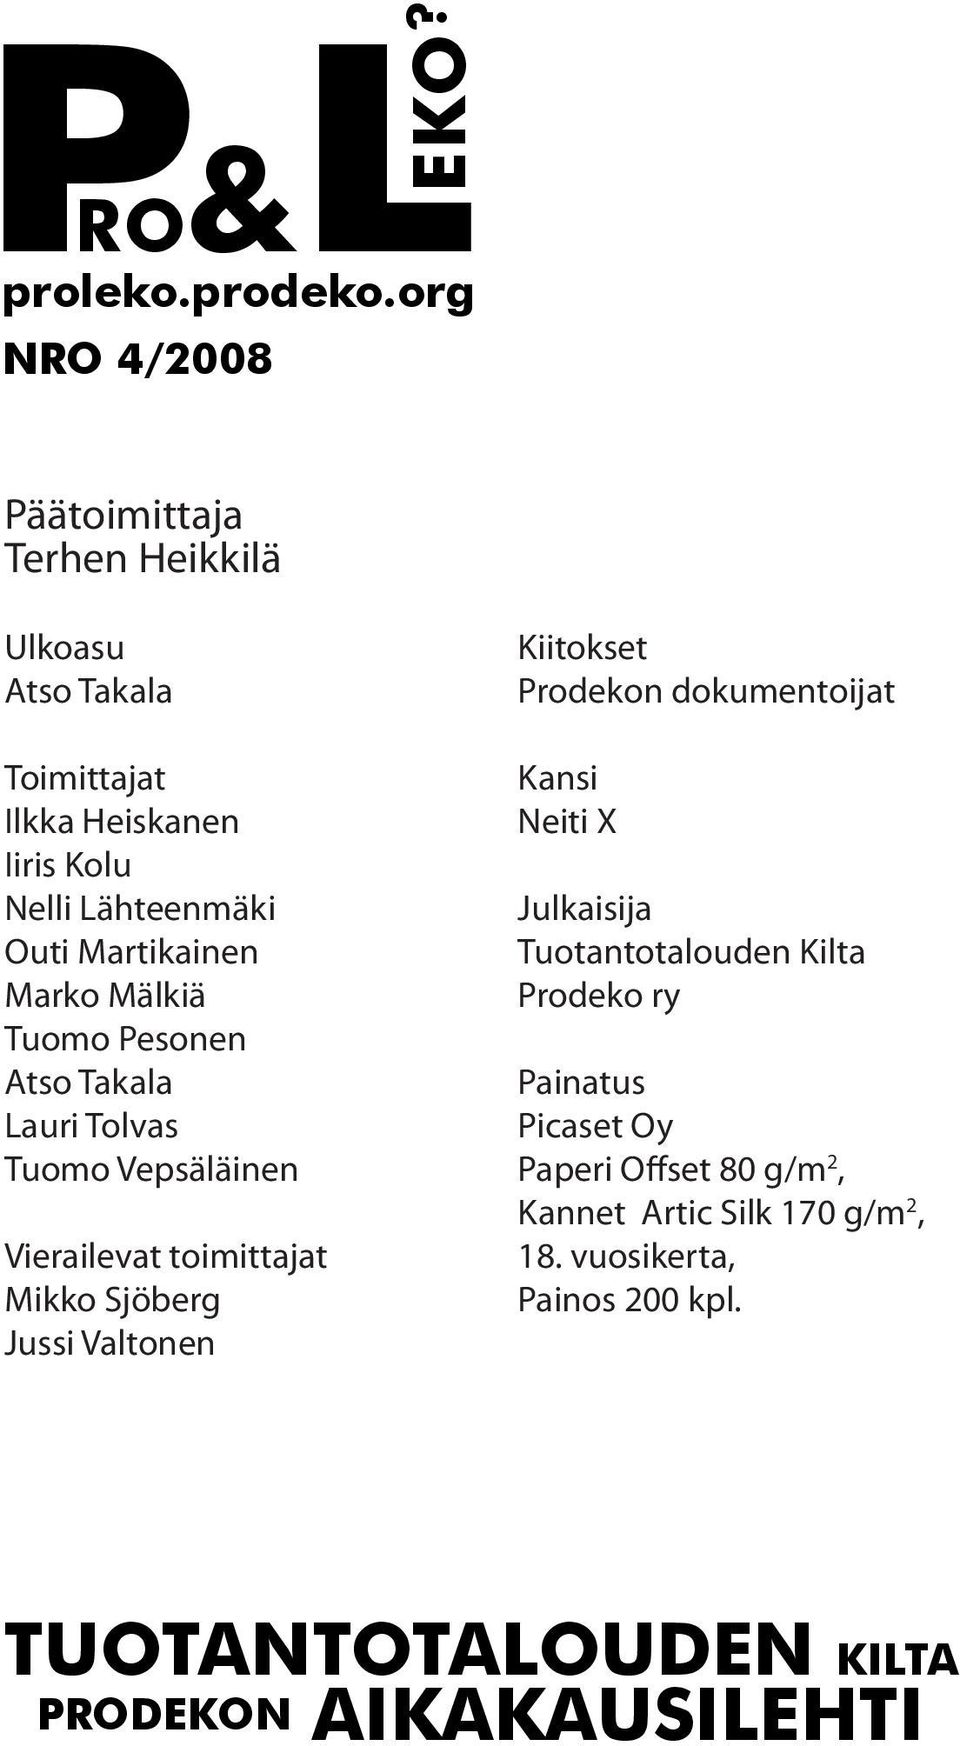 Martikainen Marko Mälkiä Tuomo Pesonen Atso Takala Lauri Tolvas Tuomo Vepsäläinen Vierailevat toimittajat Mikko Sjöberg Jussi